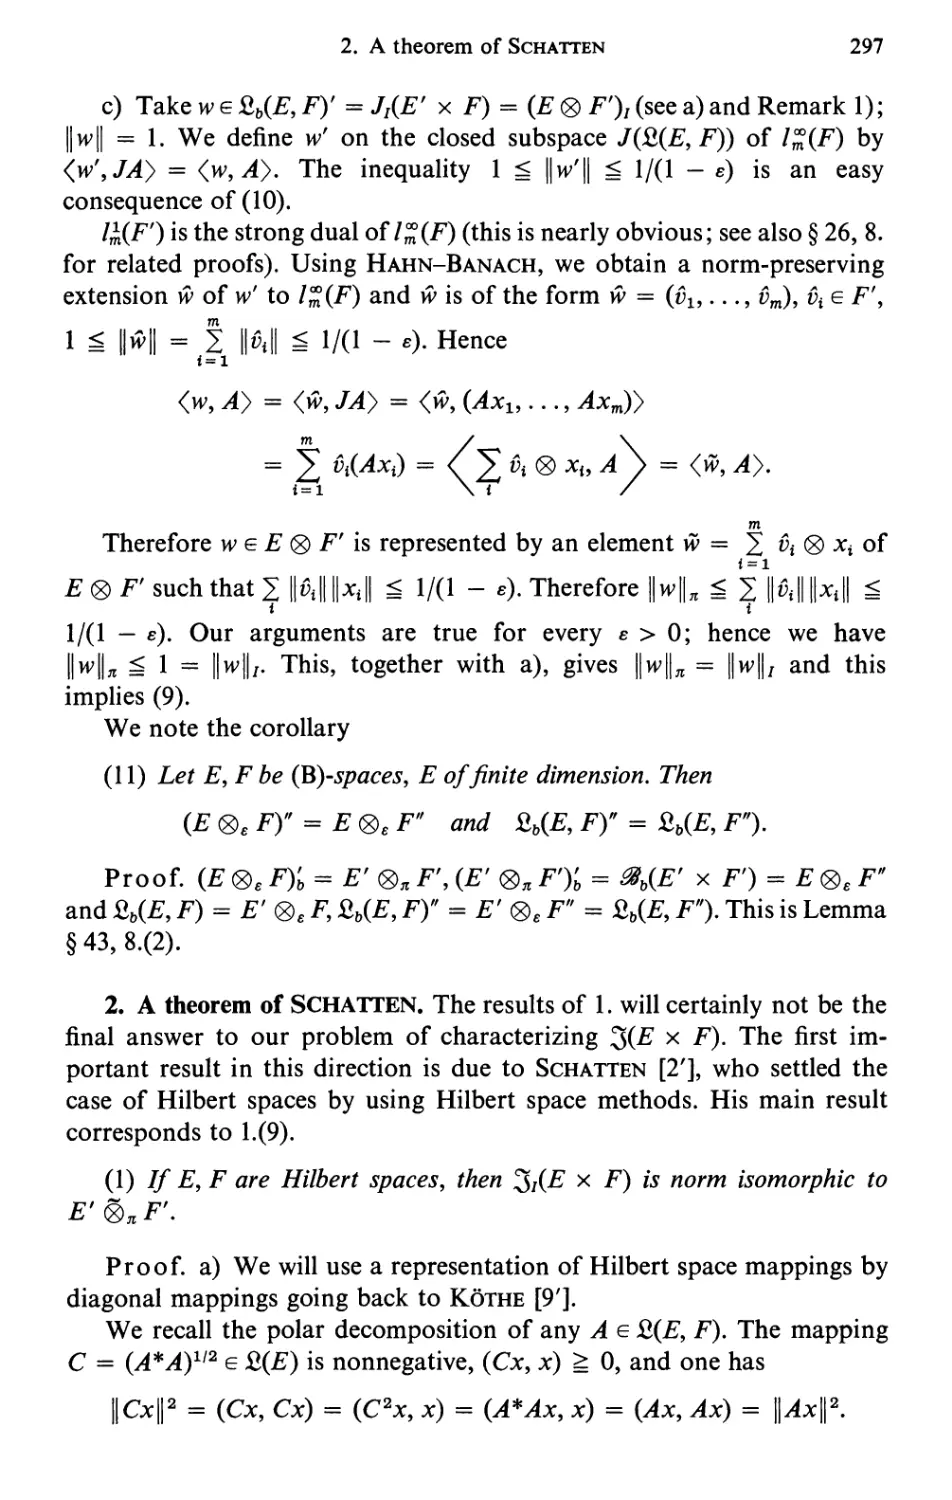 2. A theorem of Schattan